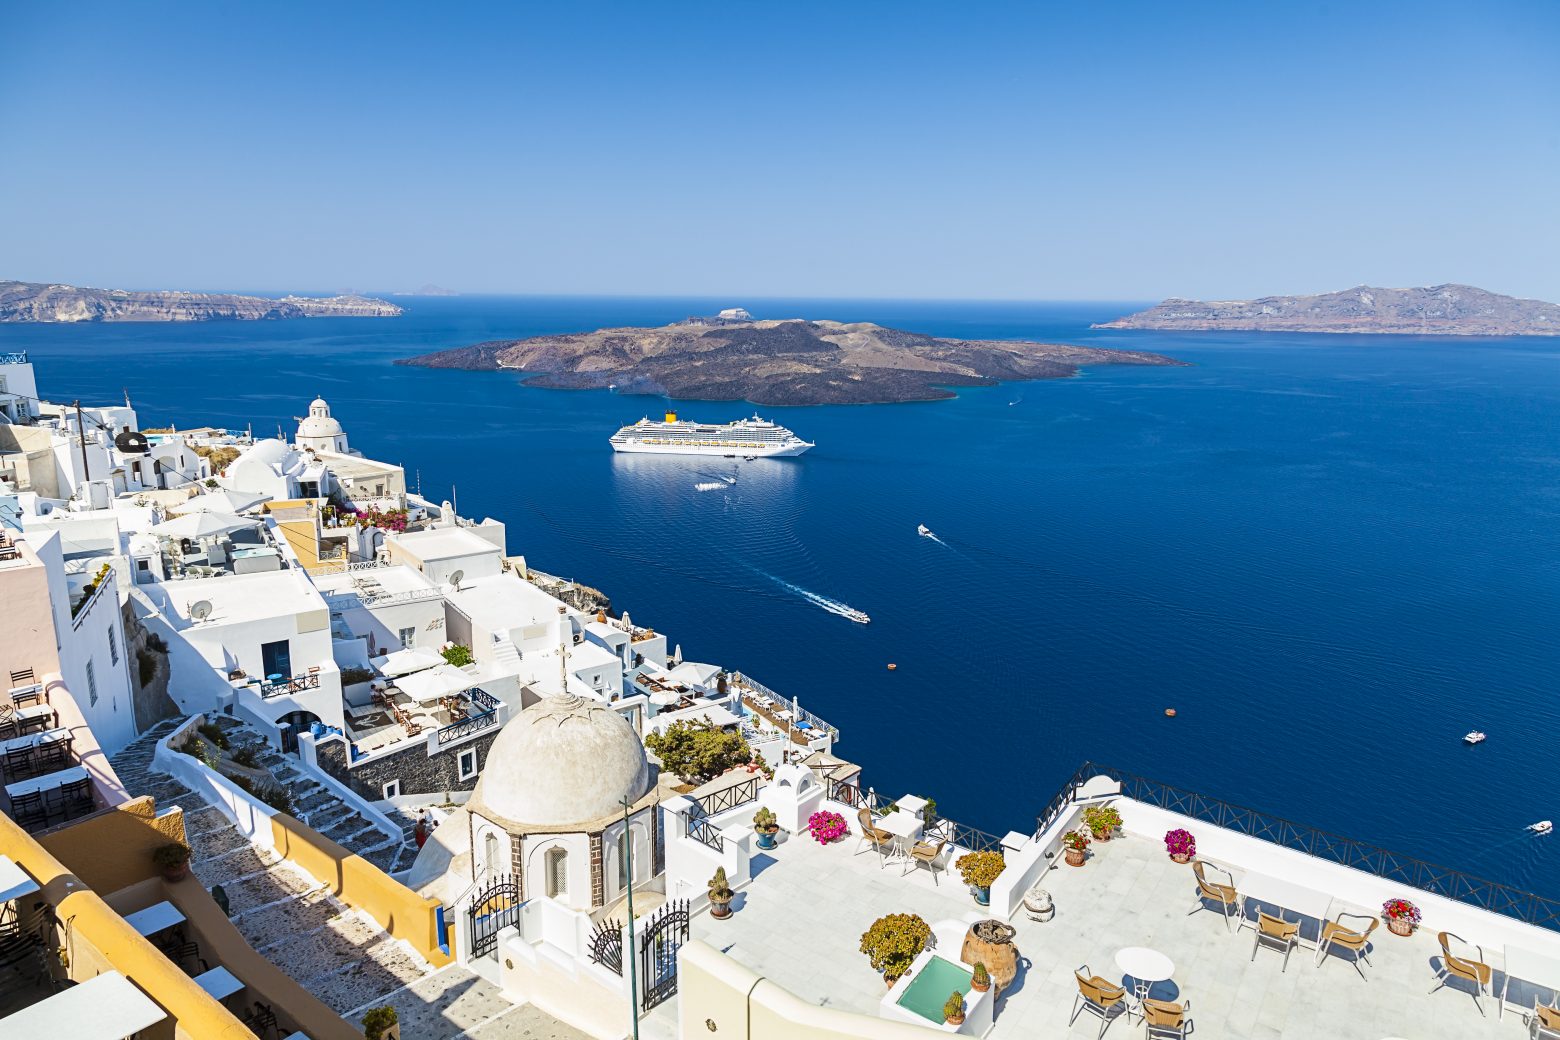 Διακοπές – Σαντορίνη: Ο πιο instagram-ικός ταξιδιωτικός προορισμός του κόσμου είναι στην Ελλάδα